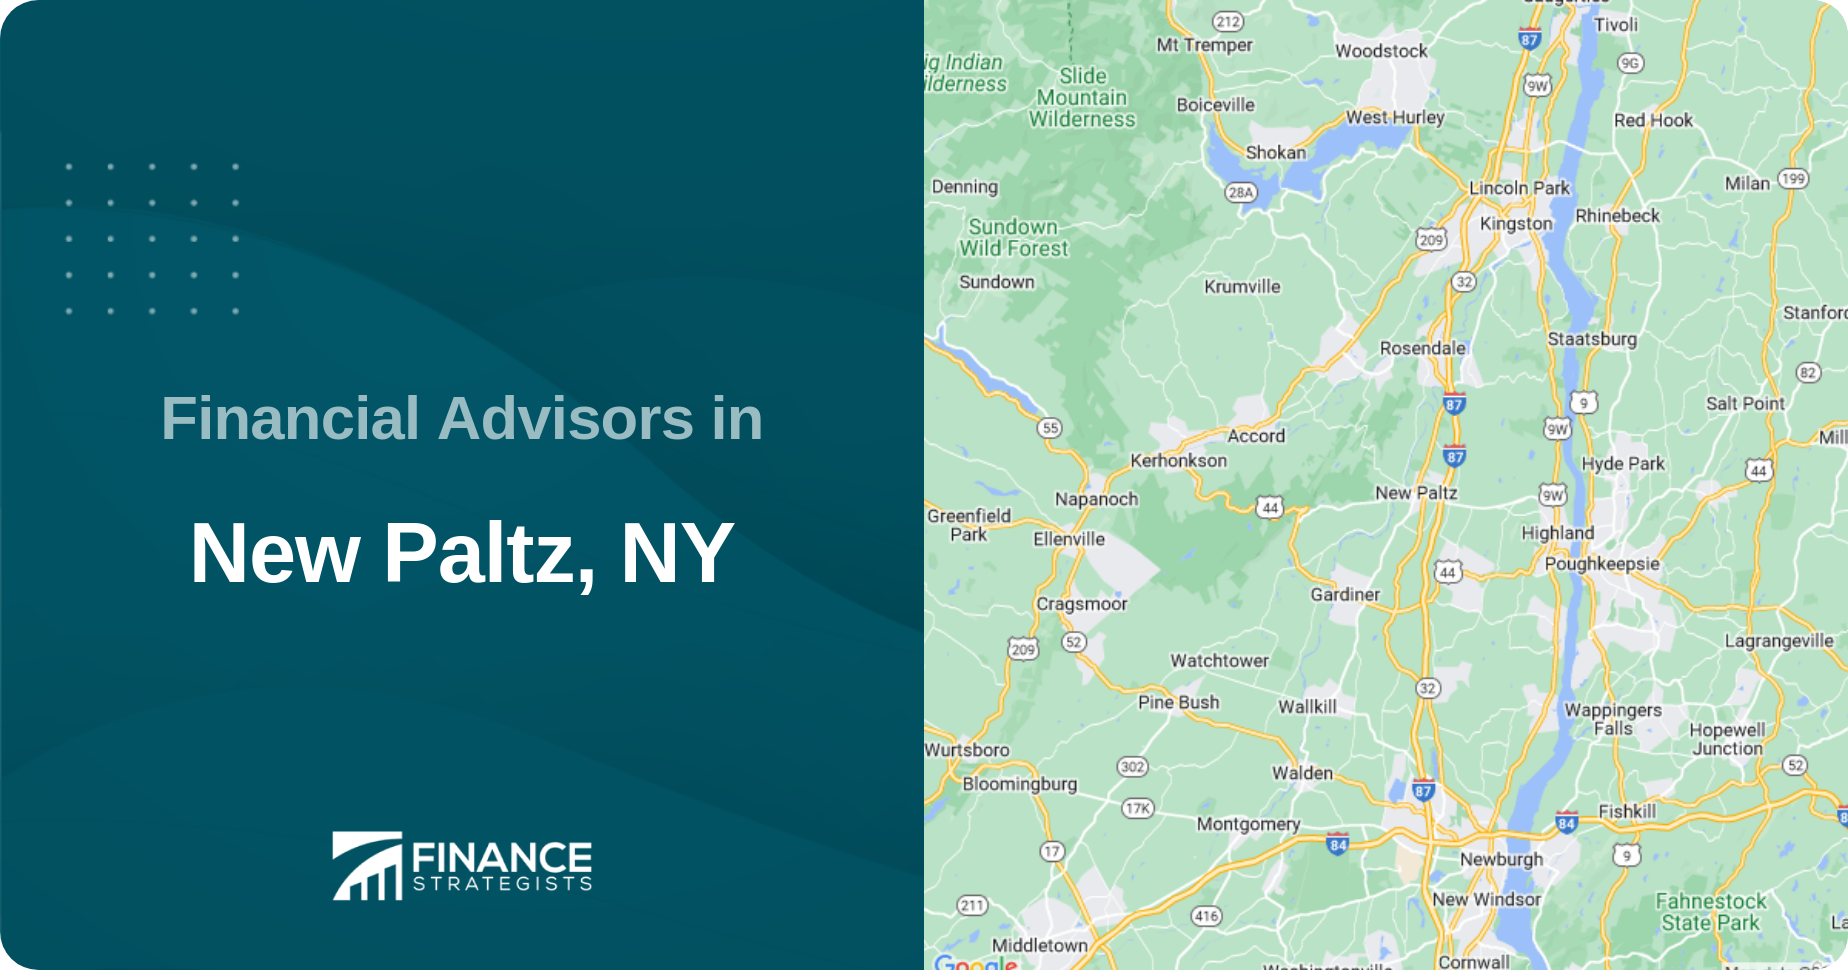 Financial Advisors in New Paltz, NY